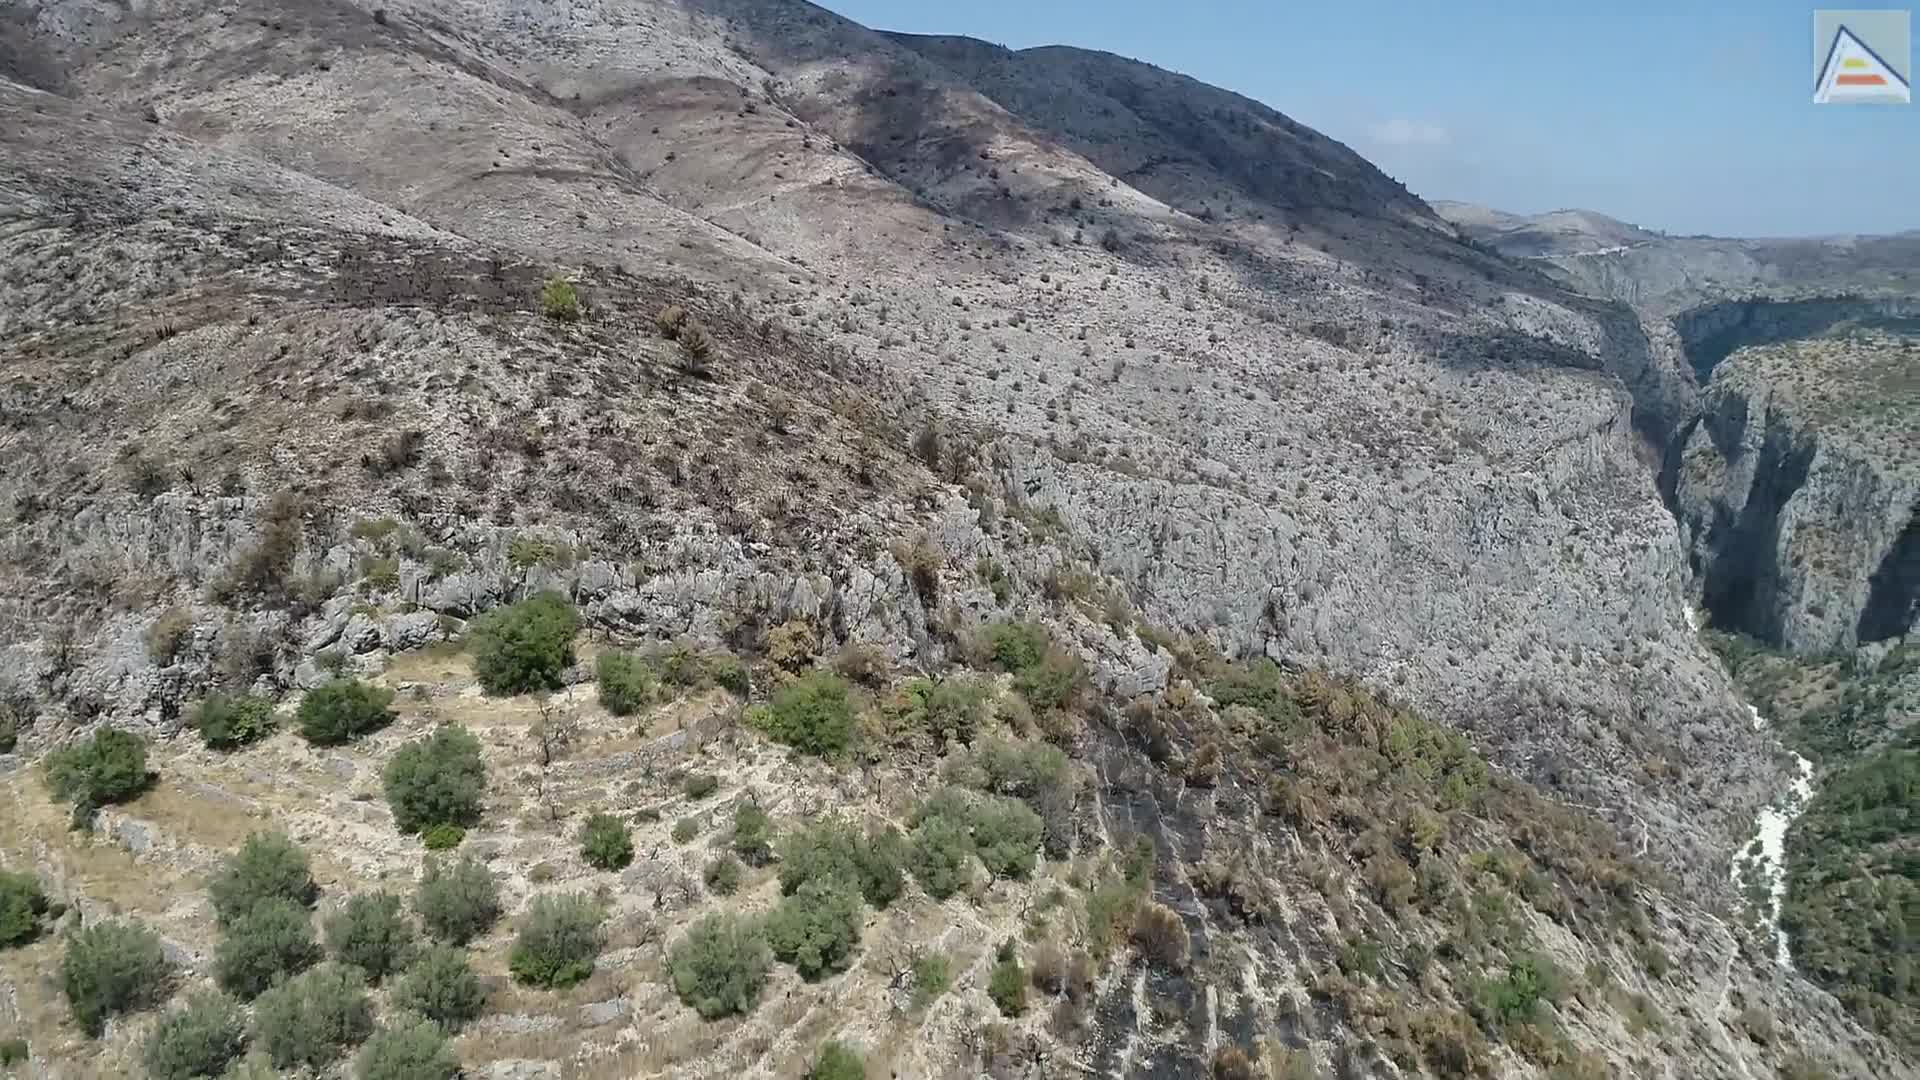 La vall de Laguar. Panorámica desde les Juvees de Dalt